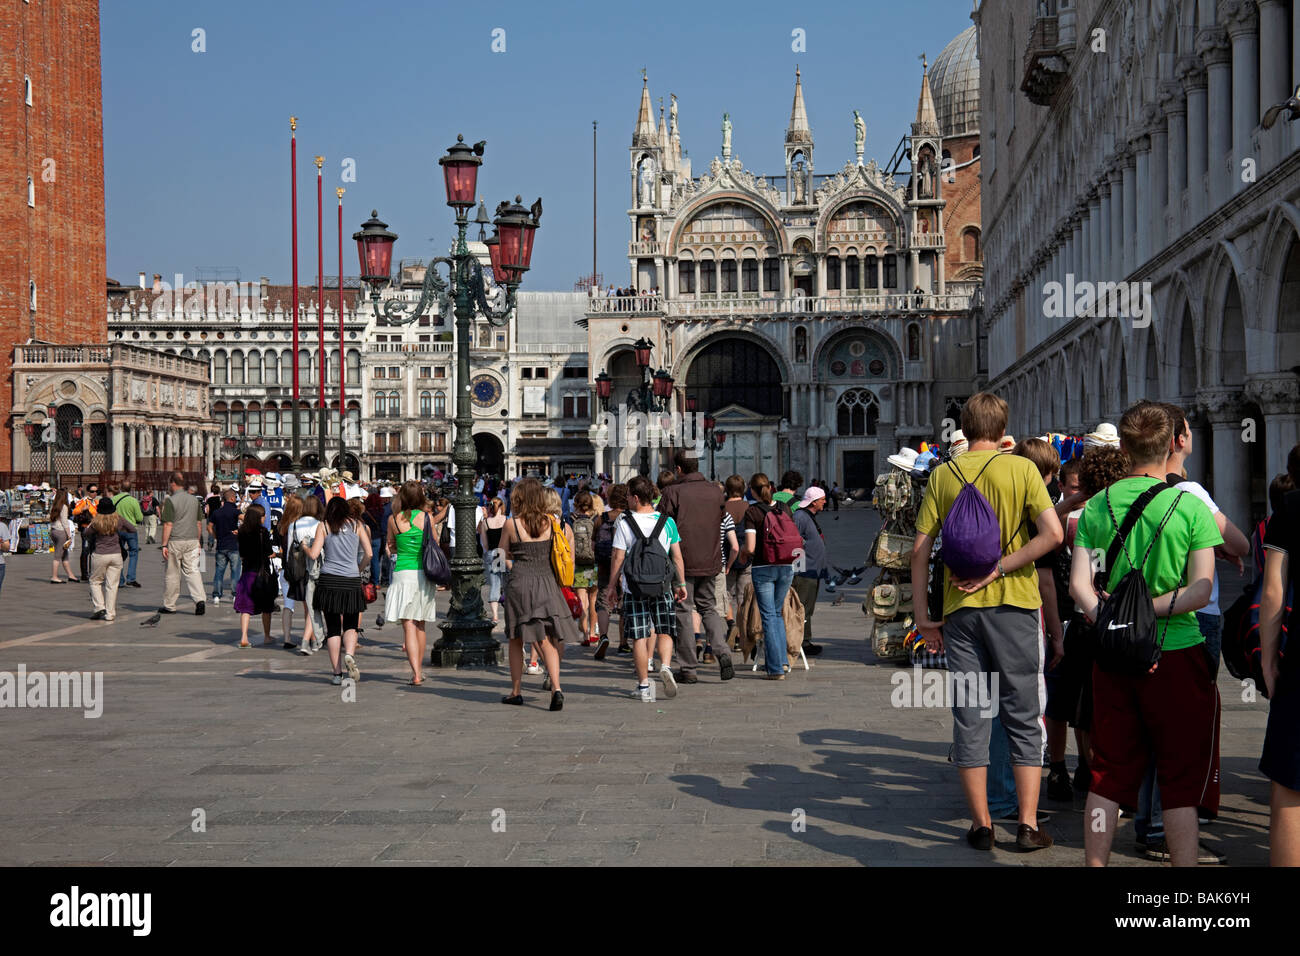 Piazetta "Piazza San Marco" Venice Italy tourist tourism Stock Photo